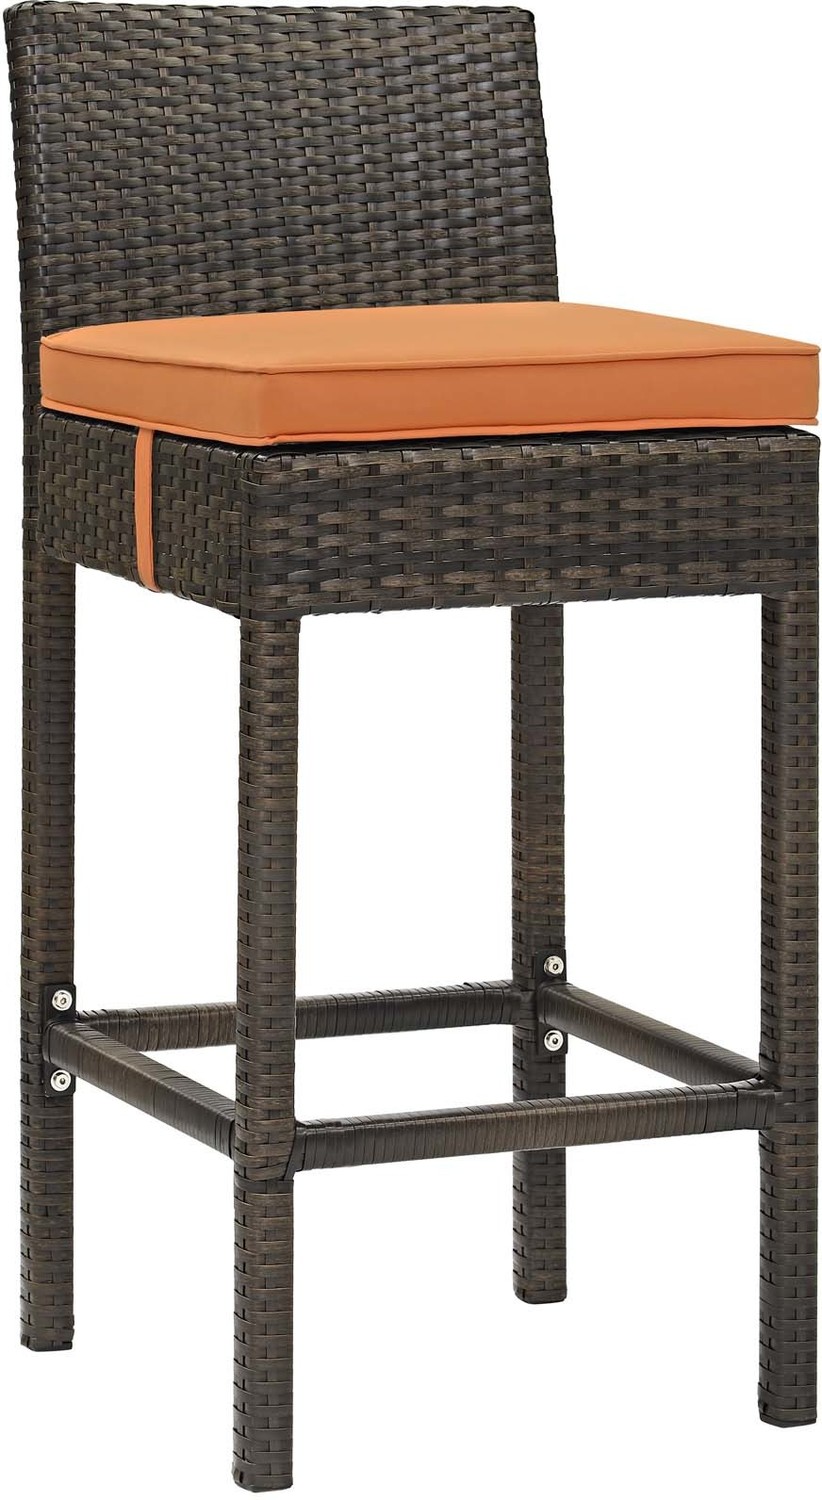 metal swivel stools Modway Furniture Bar and Dining Brown Orange